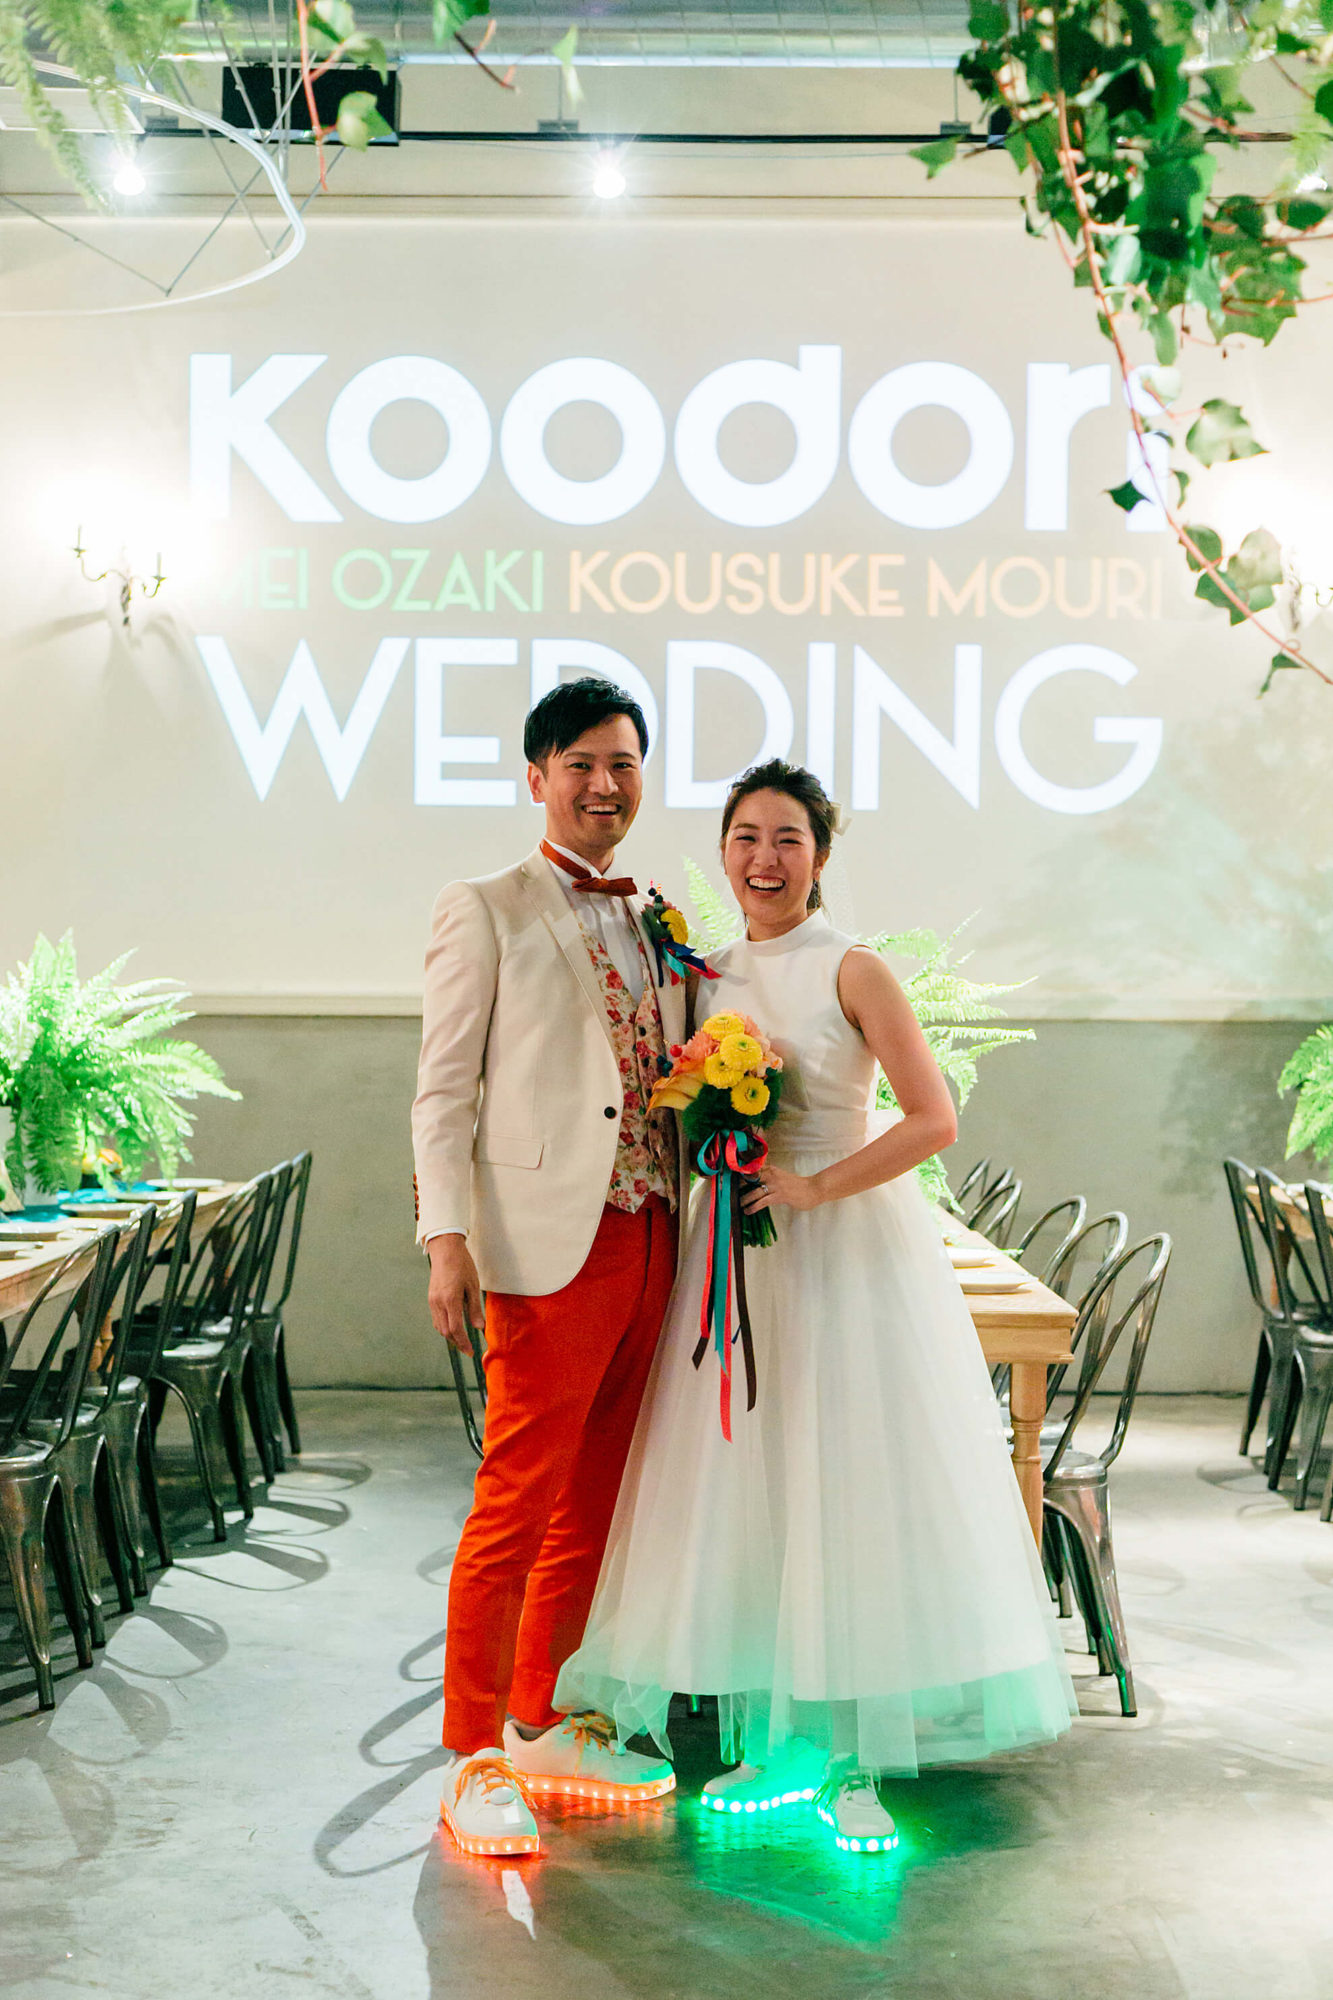 Koodori Wedding